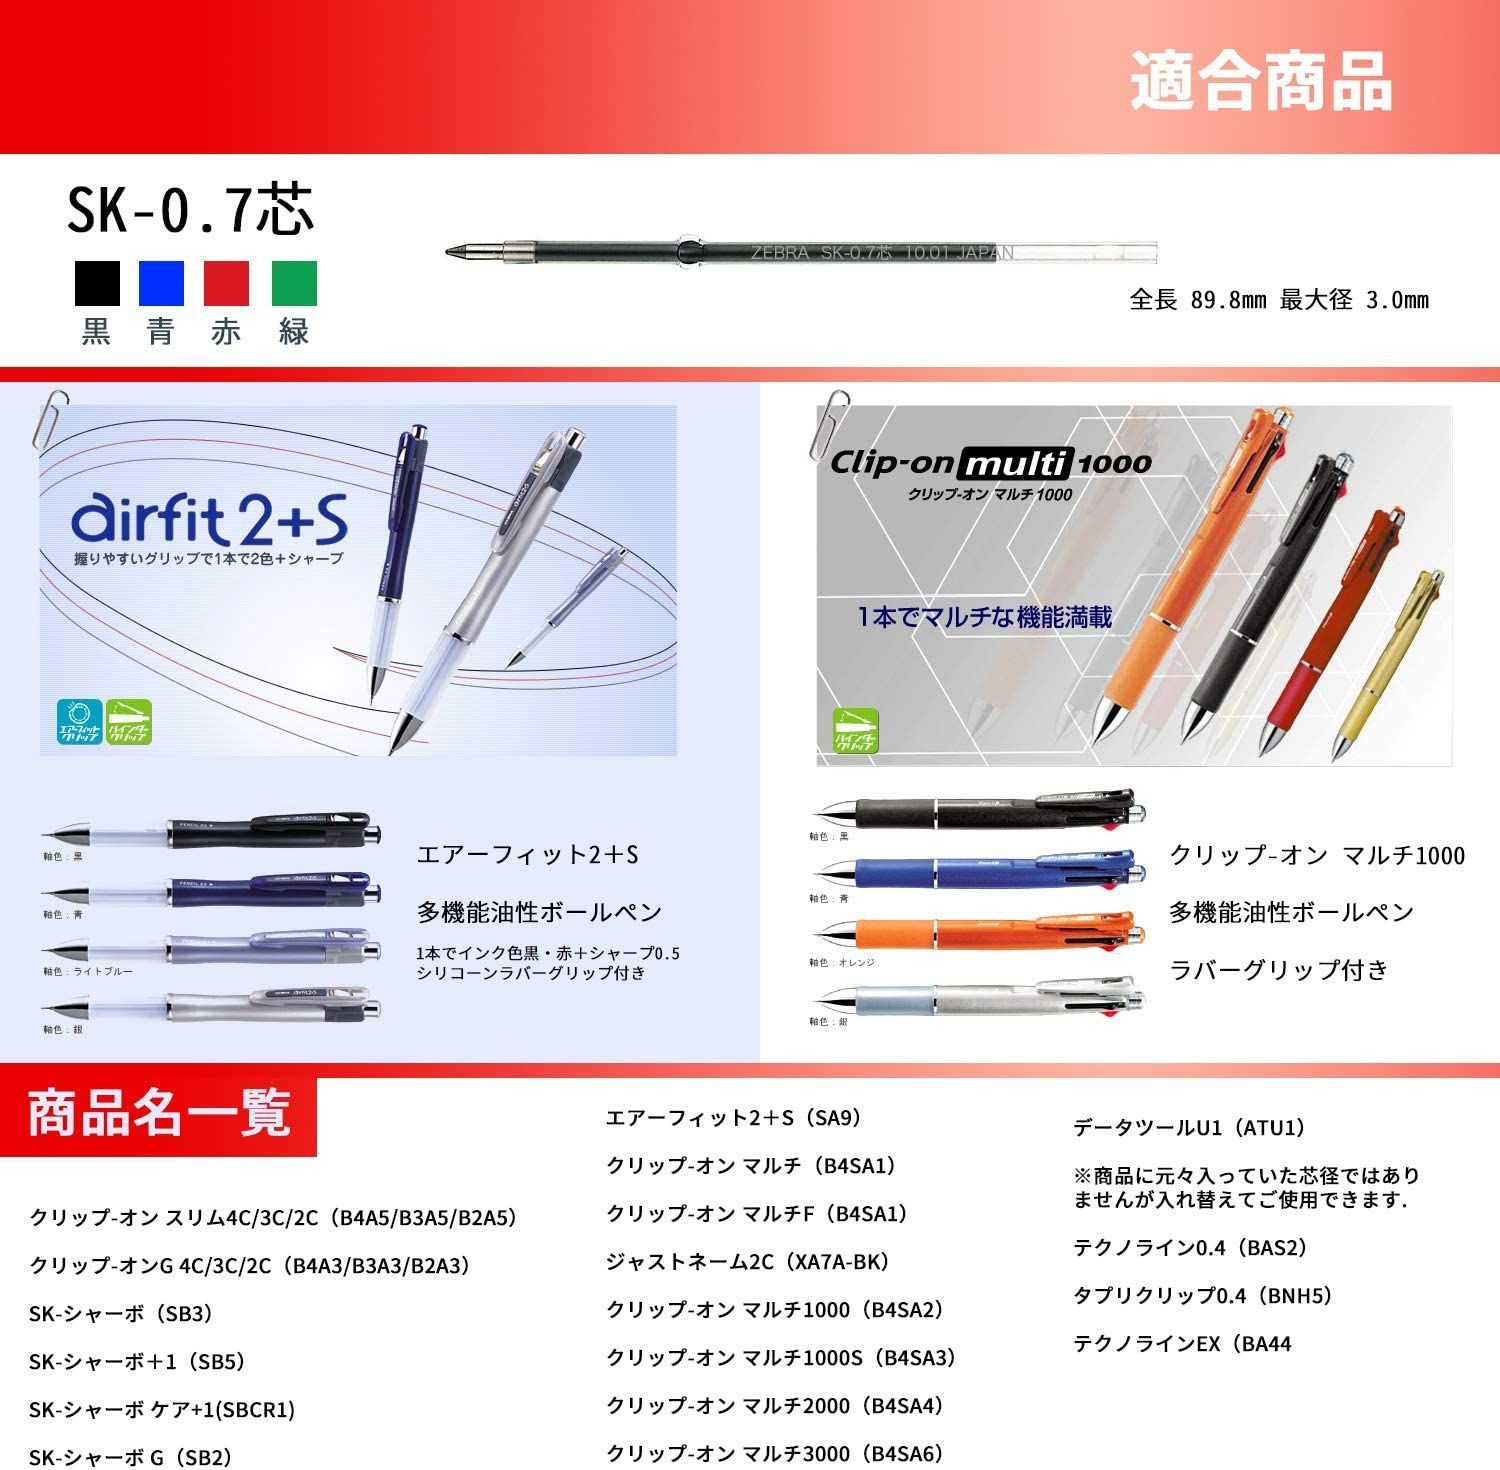 ゼブラ 油性ボールペン替芯 クリップオン SK-0.7芯 黒 10本 B-BR